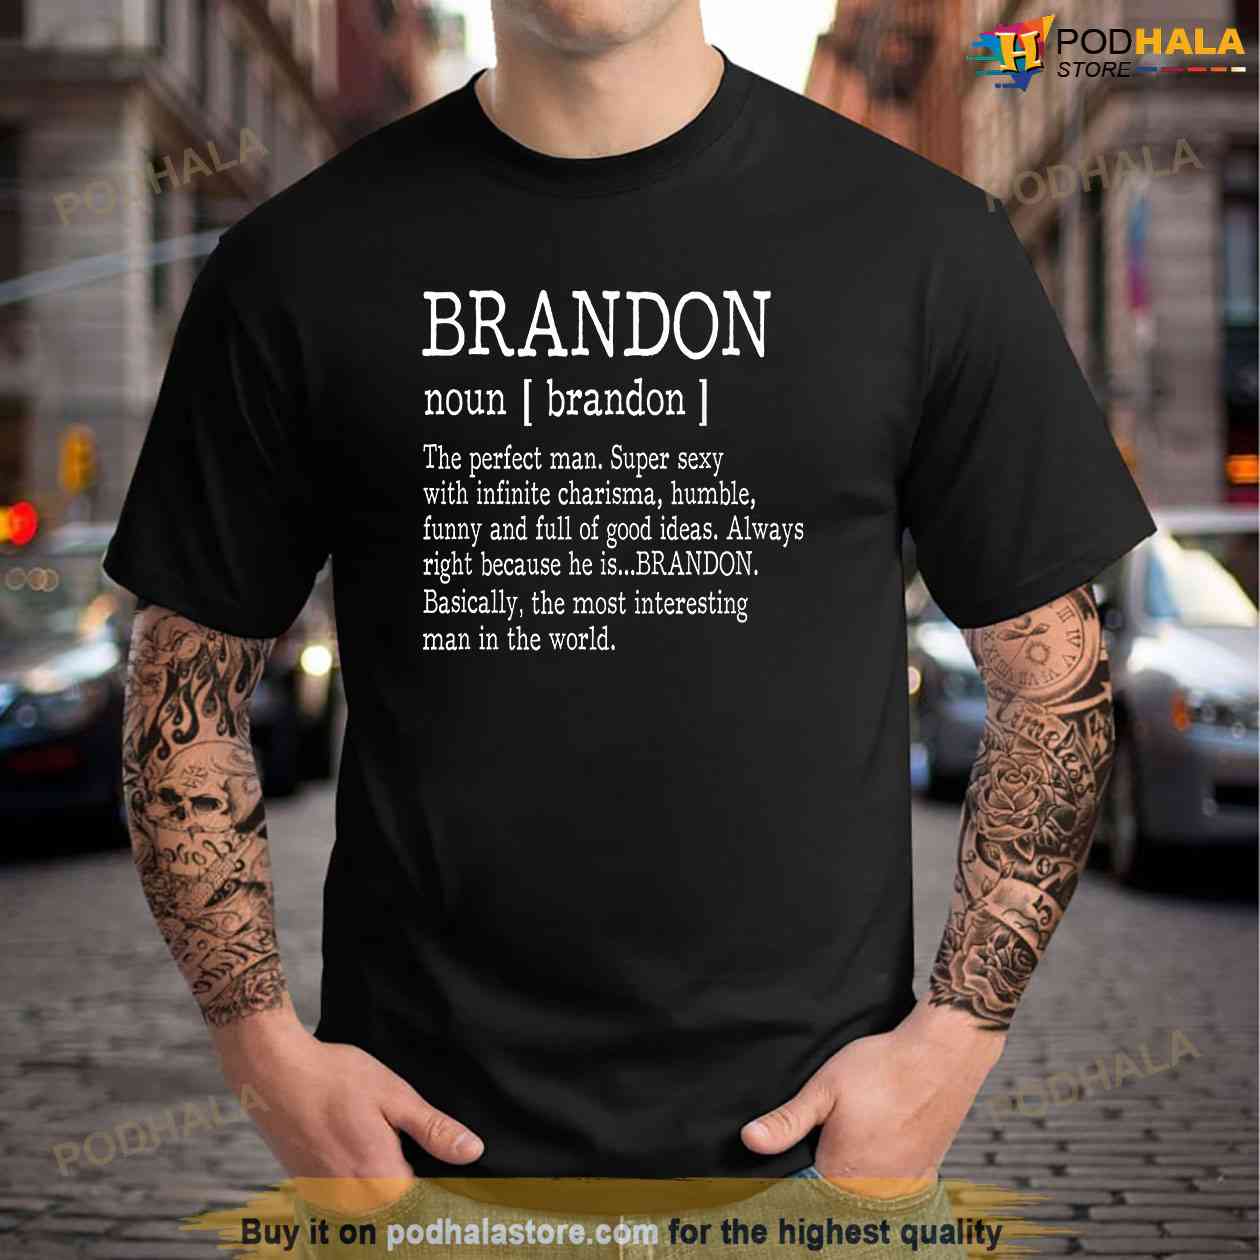 brandon name tattoo